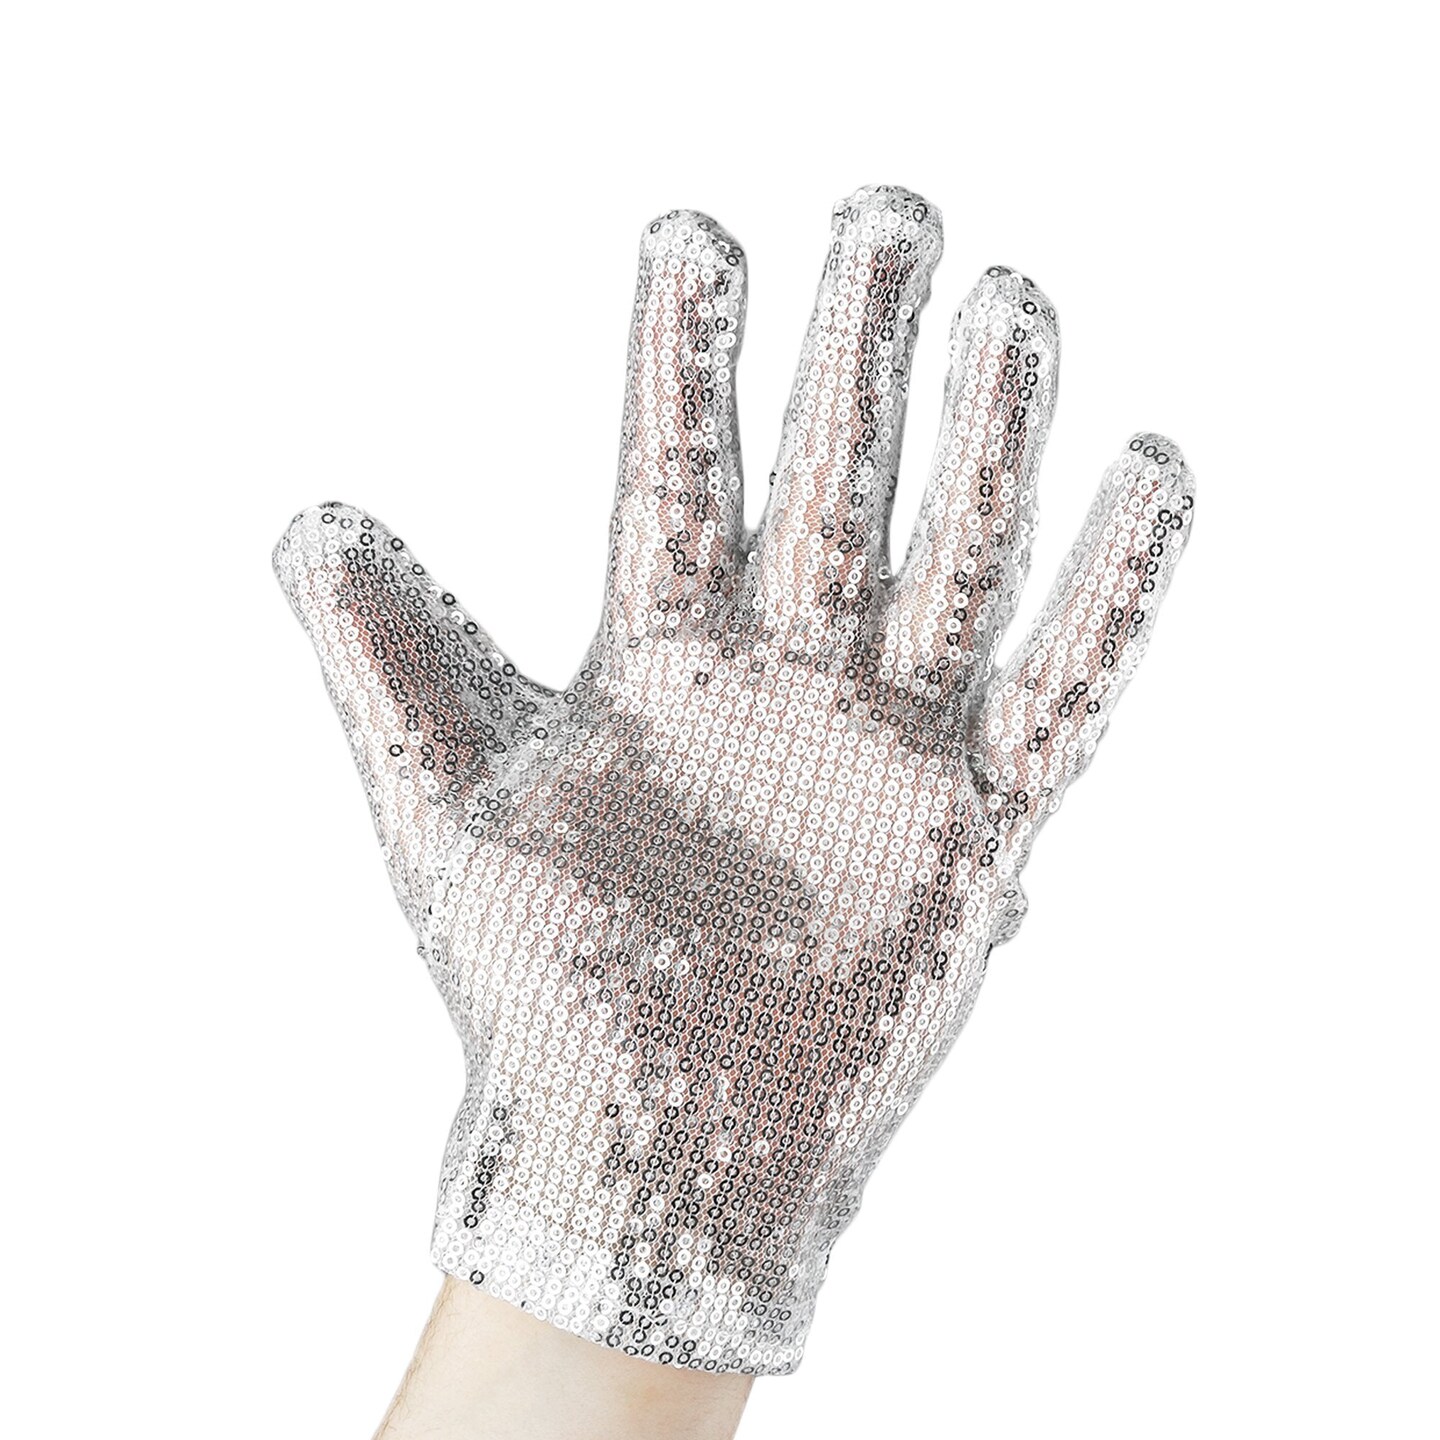  Michael Jackson Swarovski Crystal exact replica Billie Jean  glove (Thriller) - auction details